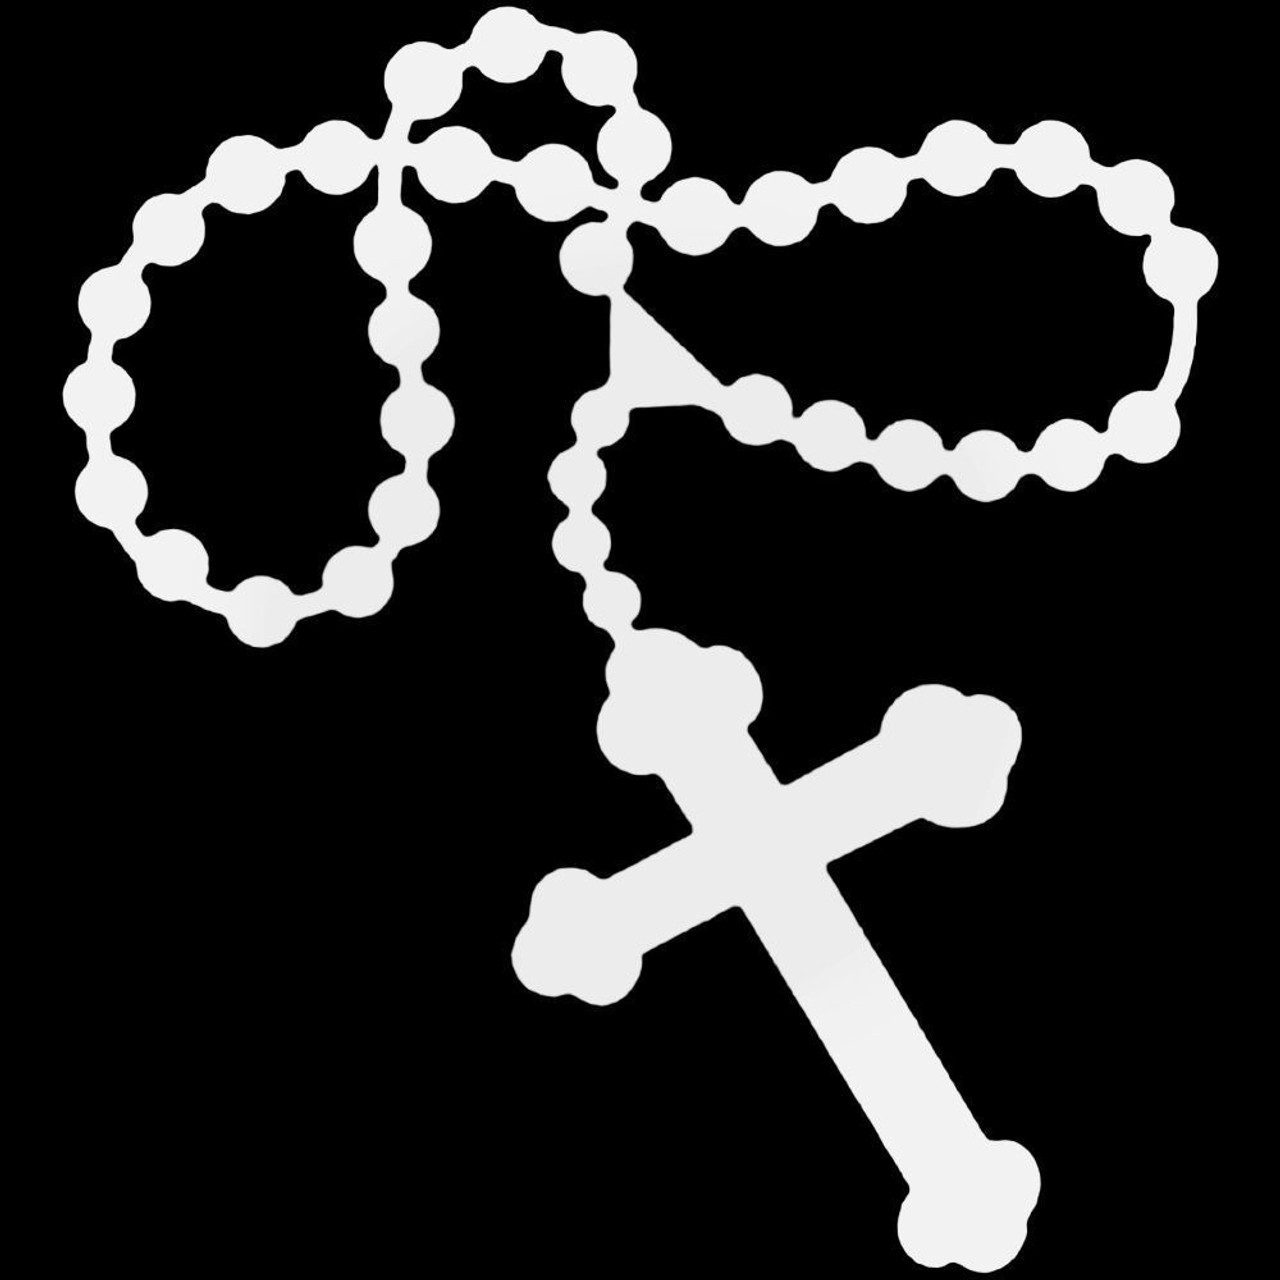 rosary cross clip art